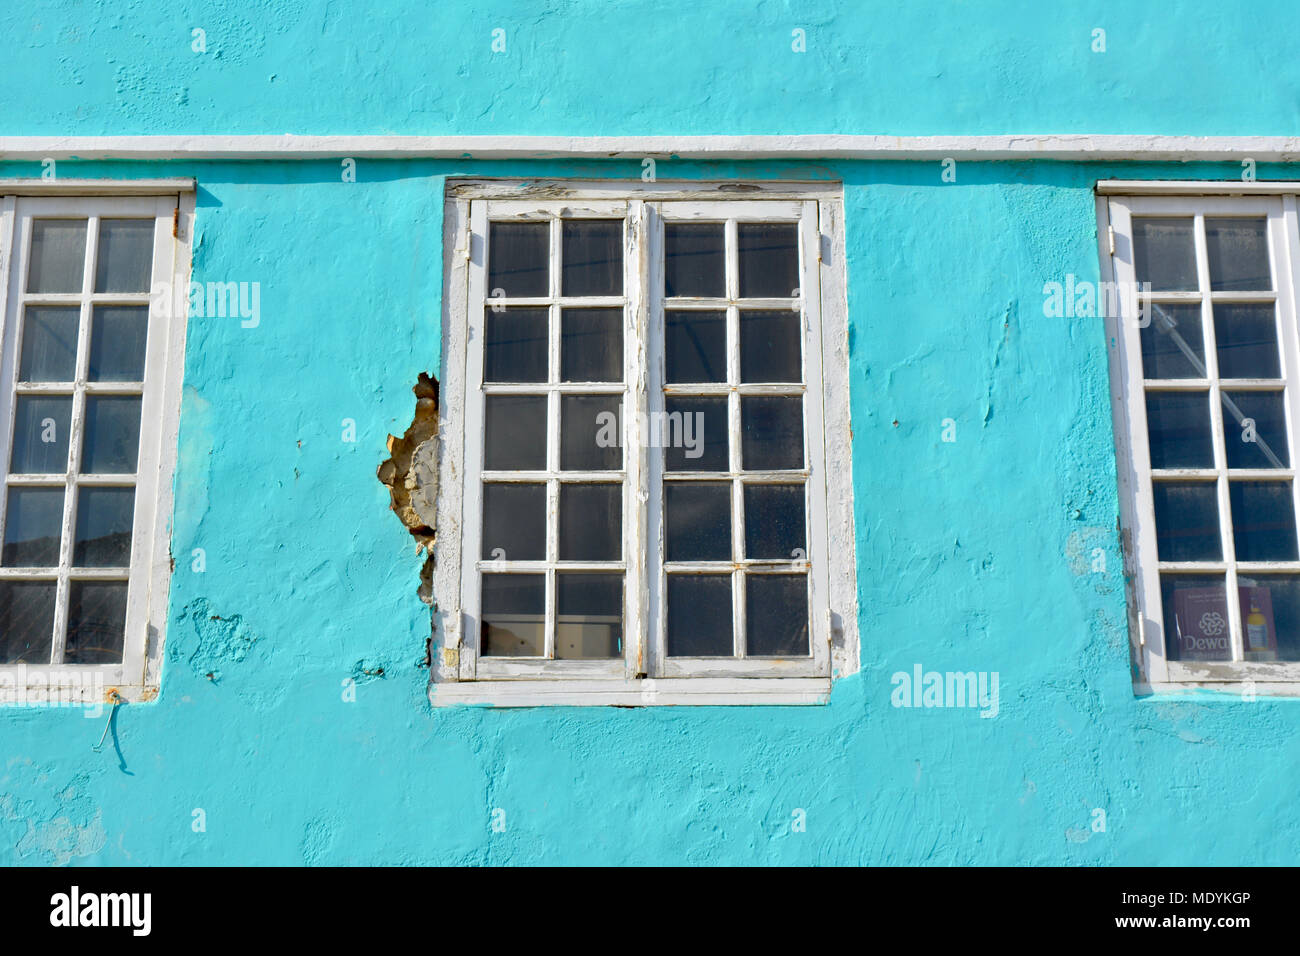 Des murs pastel bleu des Caraïbes. Détail d'un ancien bâtiment. Willemstad, Curaçao. Banque D'Images